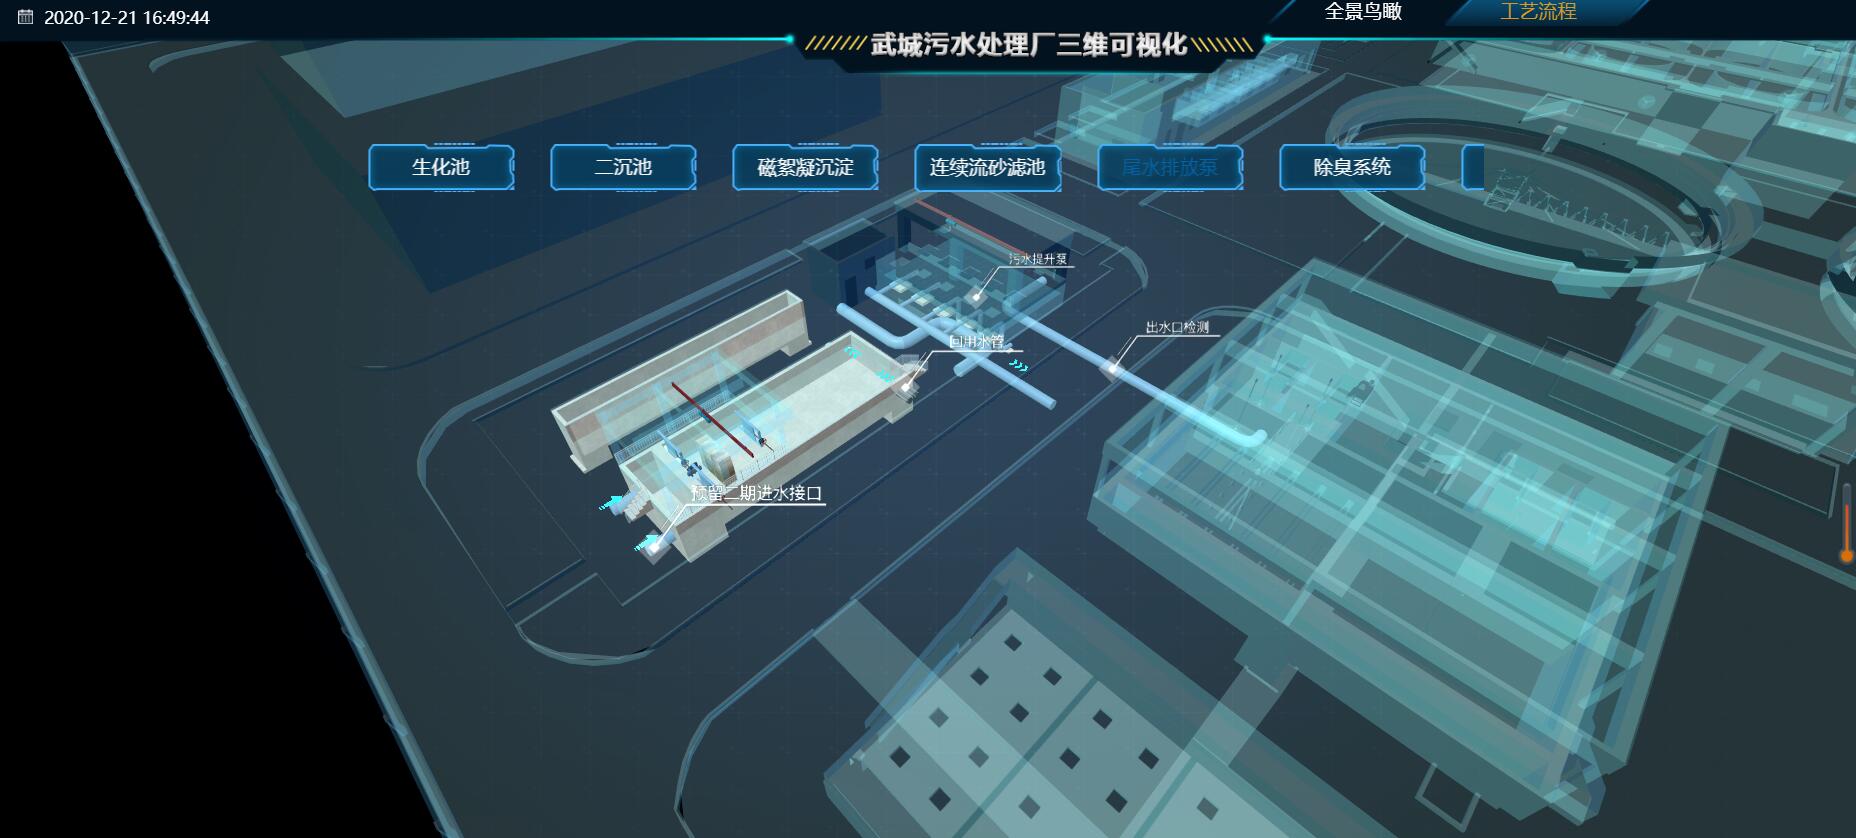 三维工业仿真 北京水厂vr虚拟现实展示系统